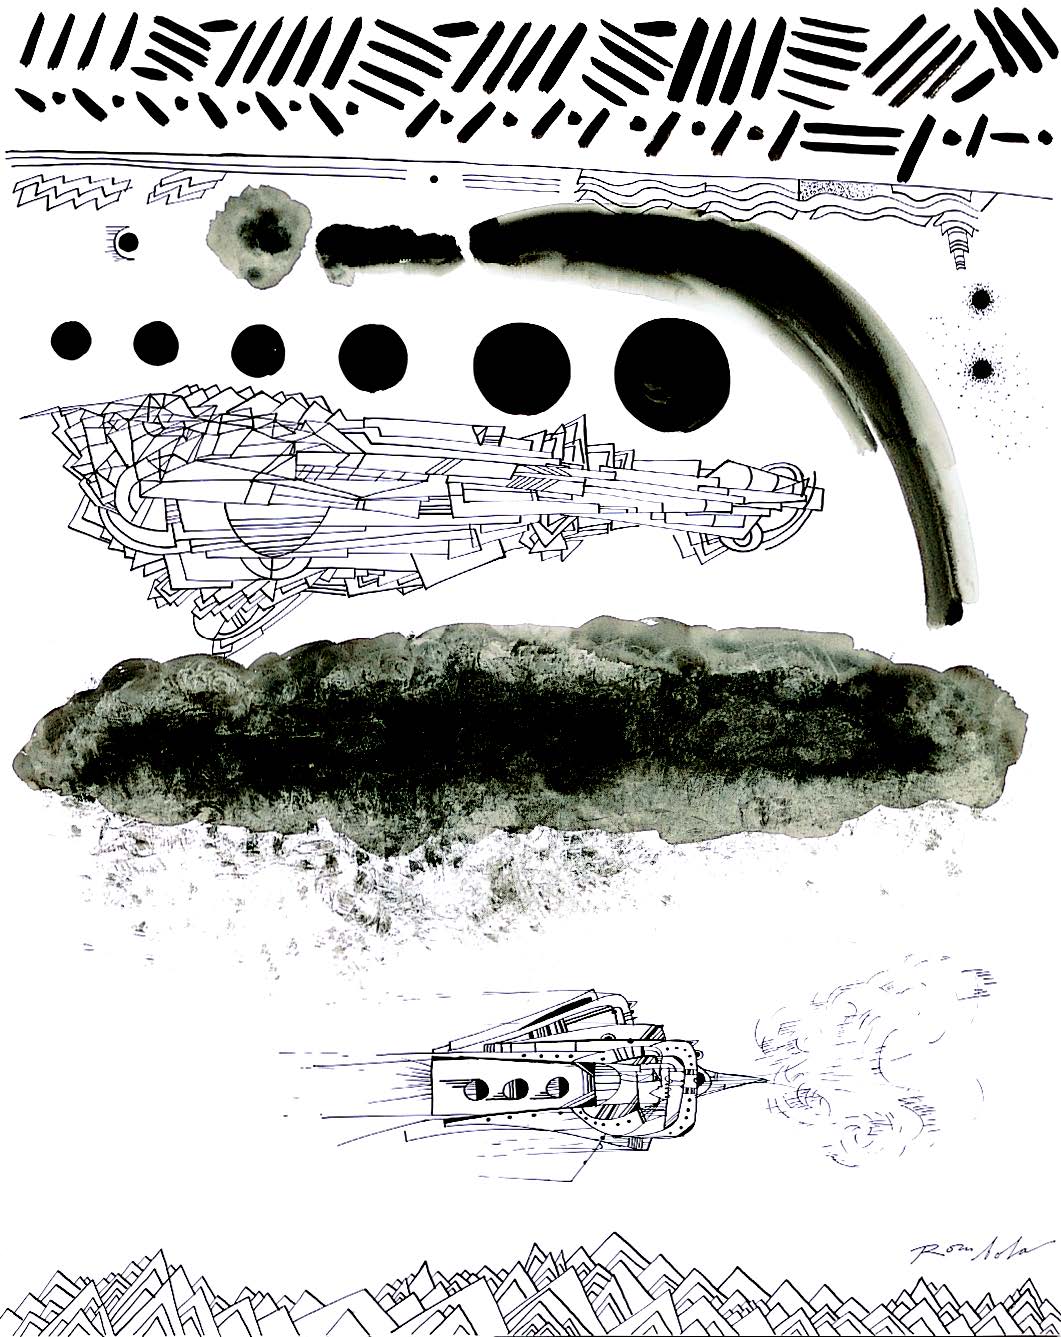   Exploring Spaceship    Ink on paper 1967   